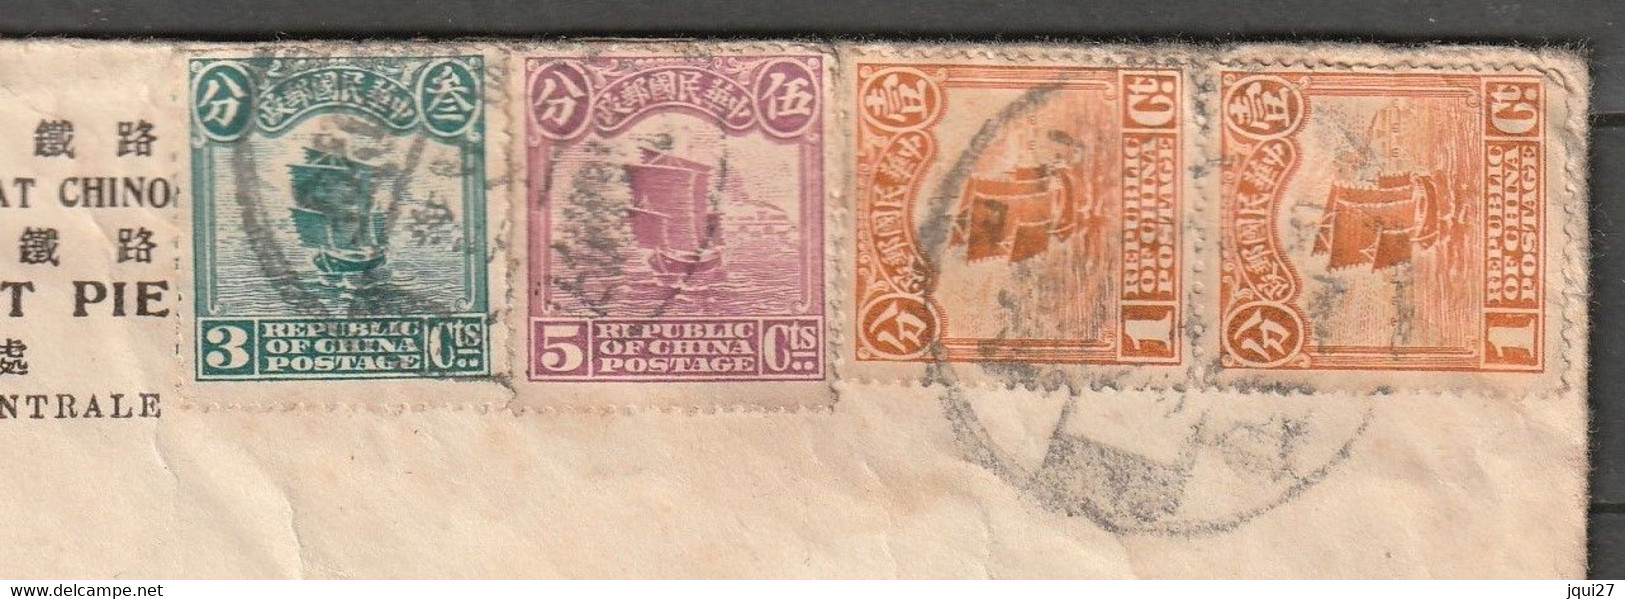 Lettre De Chine Pour La France N° 146A, 149A, 151A Enveloppe Des Chemins De Fer De L'Etat Chinois Lignes Lung-Hai - 1912-1949 Republic